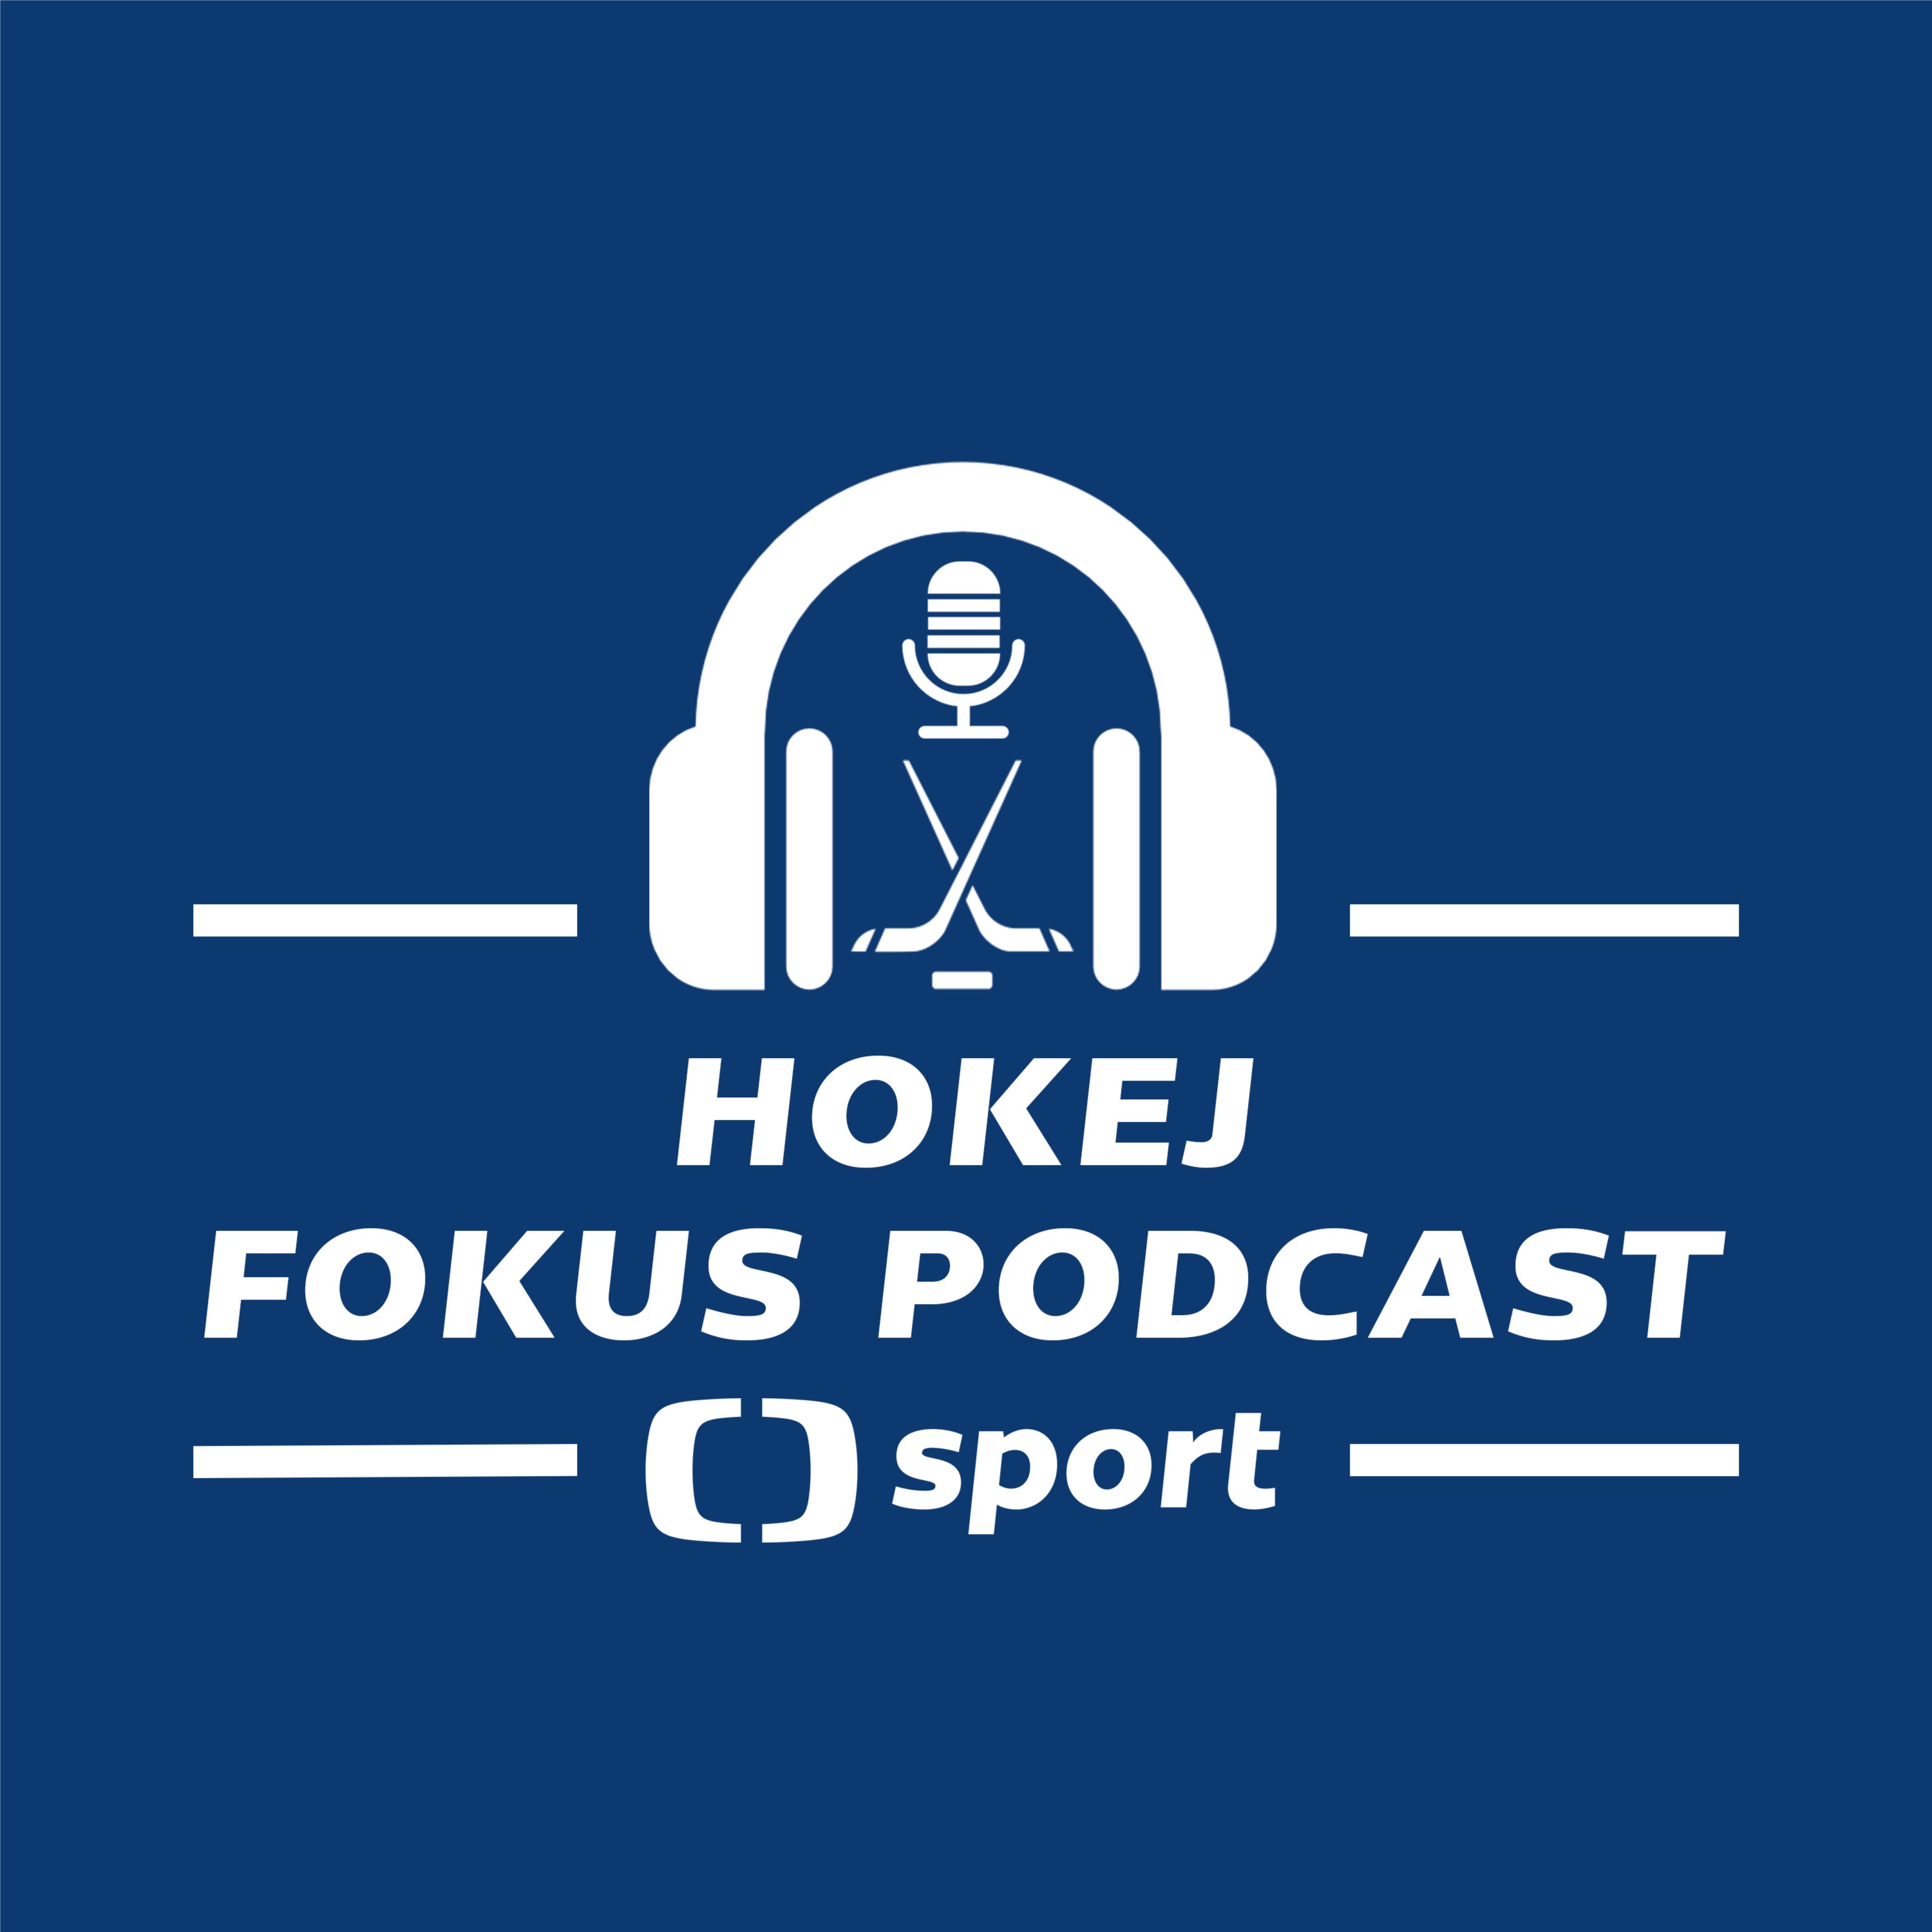 Hokej fokus podcast: Jde Litvínov i přes kritiku správným směrem a je na čase měnit formát play-off?